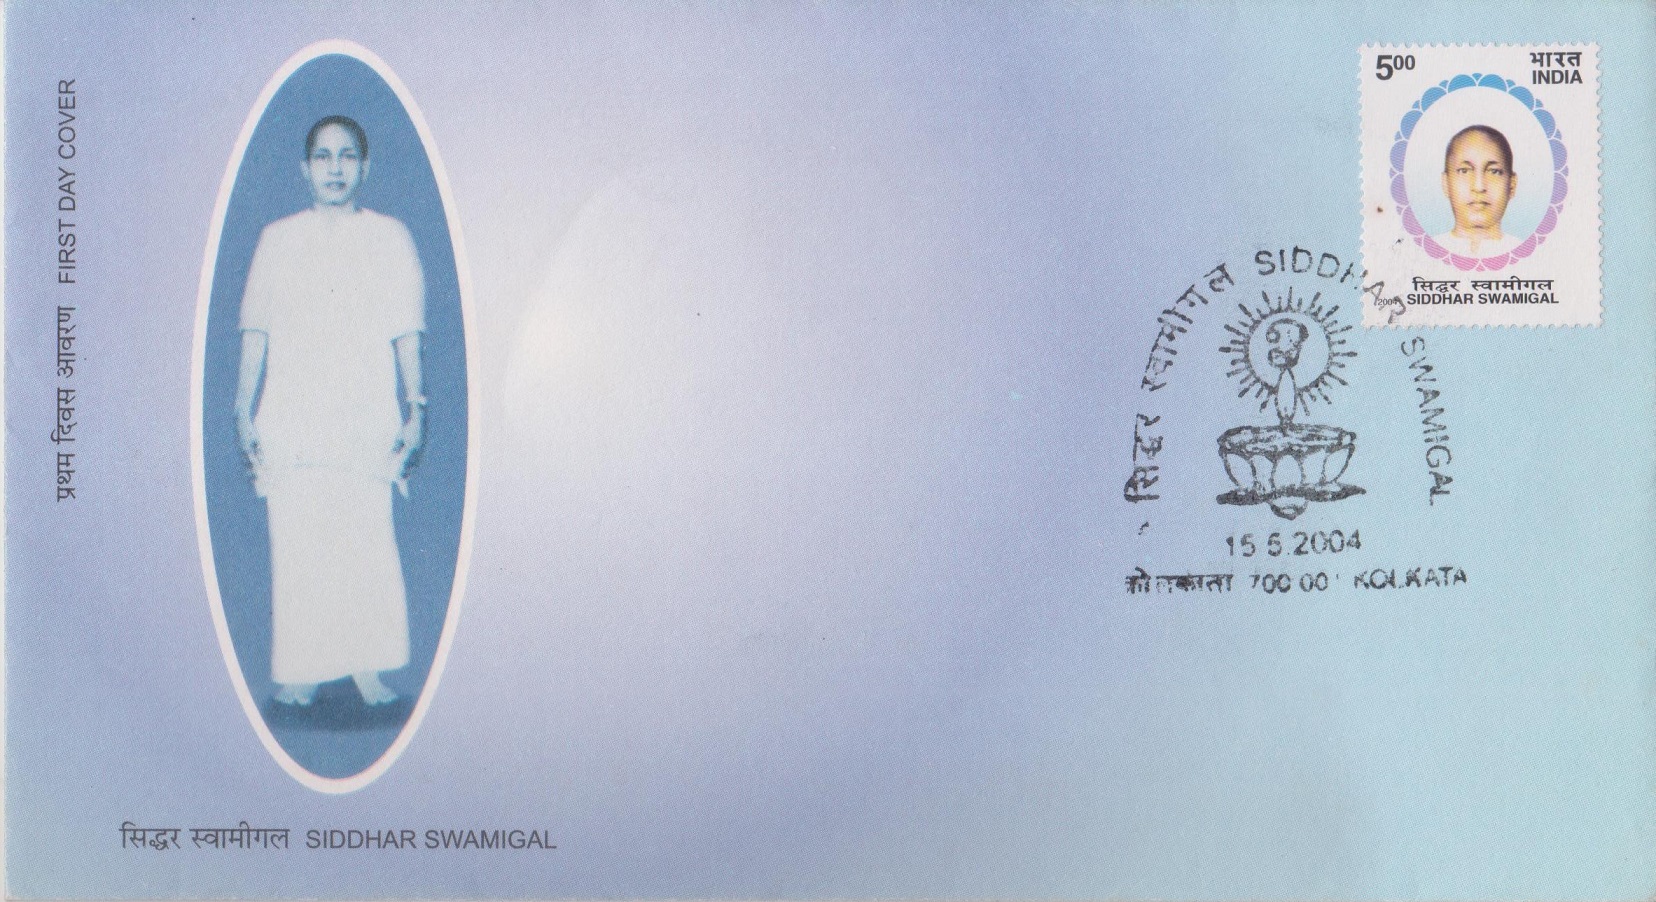 Maha Siddhar Mayiladuthurai Siddhar Swamigal